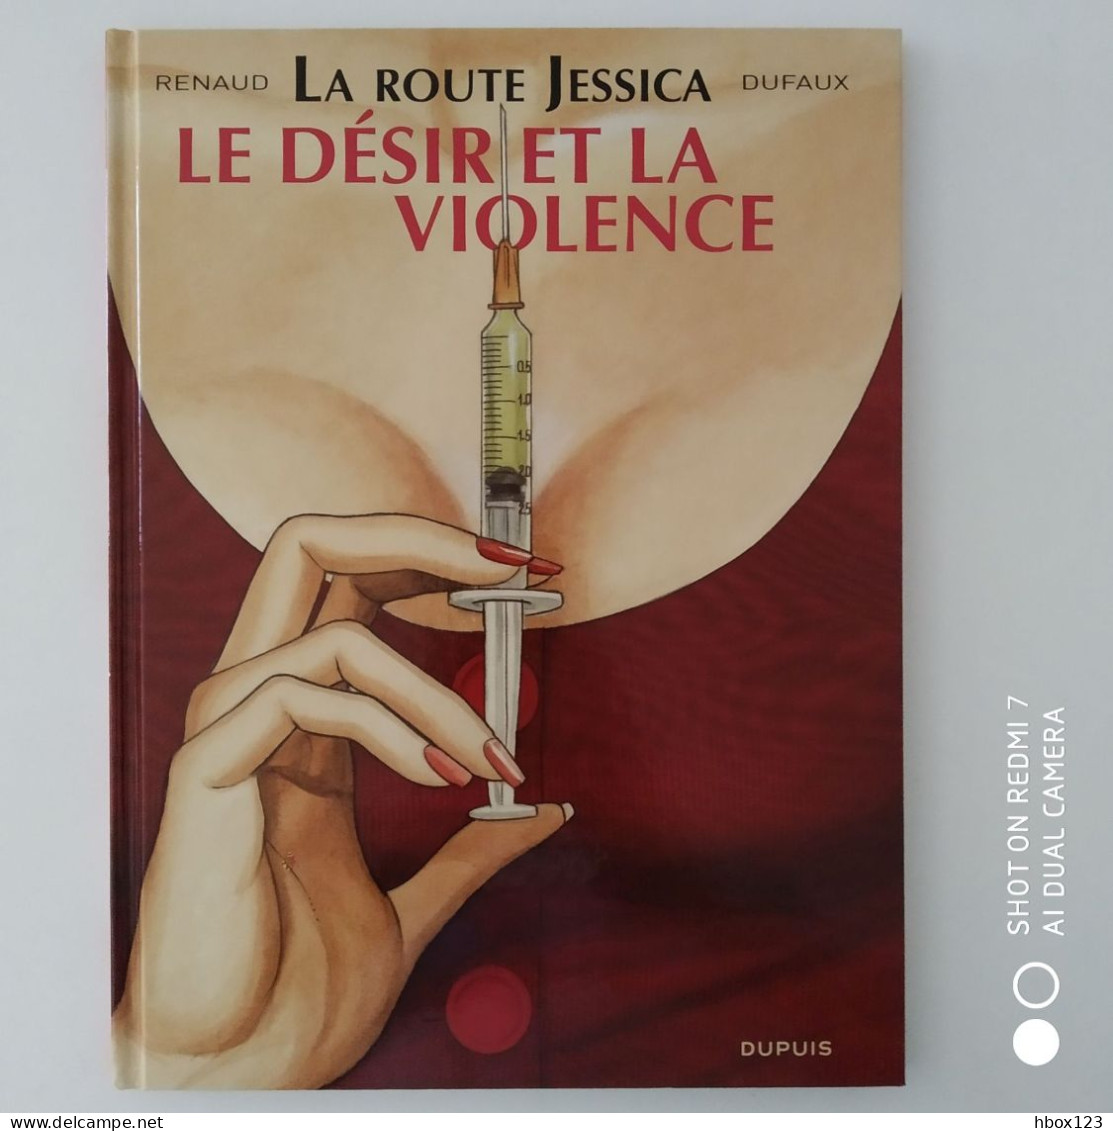 JESSICA BLANDY série complète 24 + 3 albums LA ROUTE JESSICA série complète.